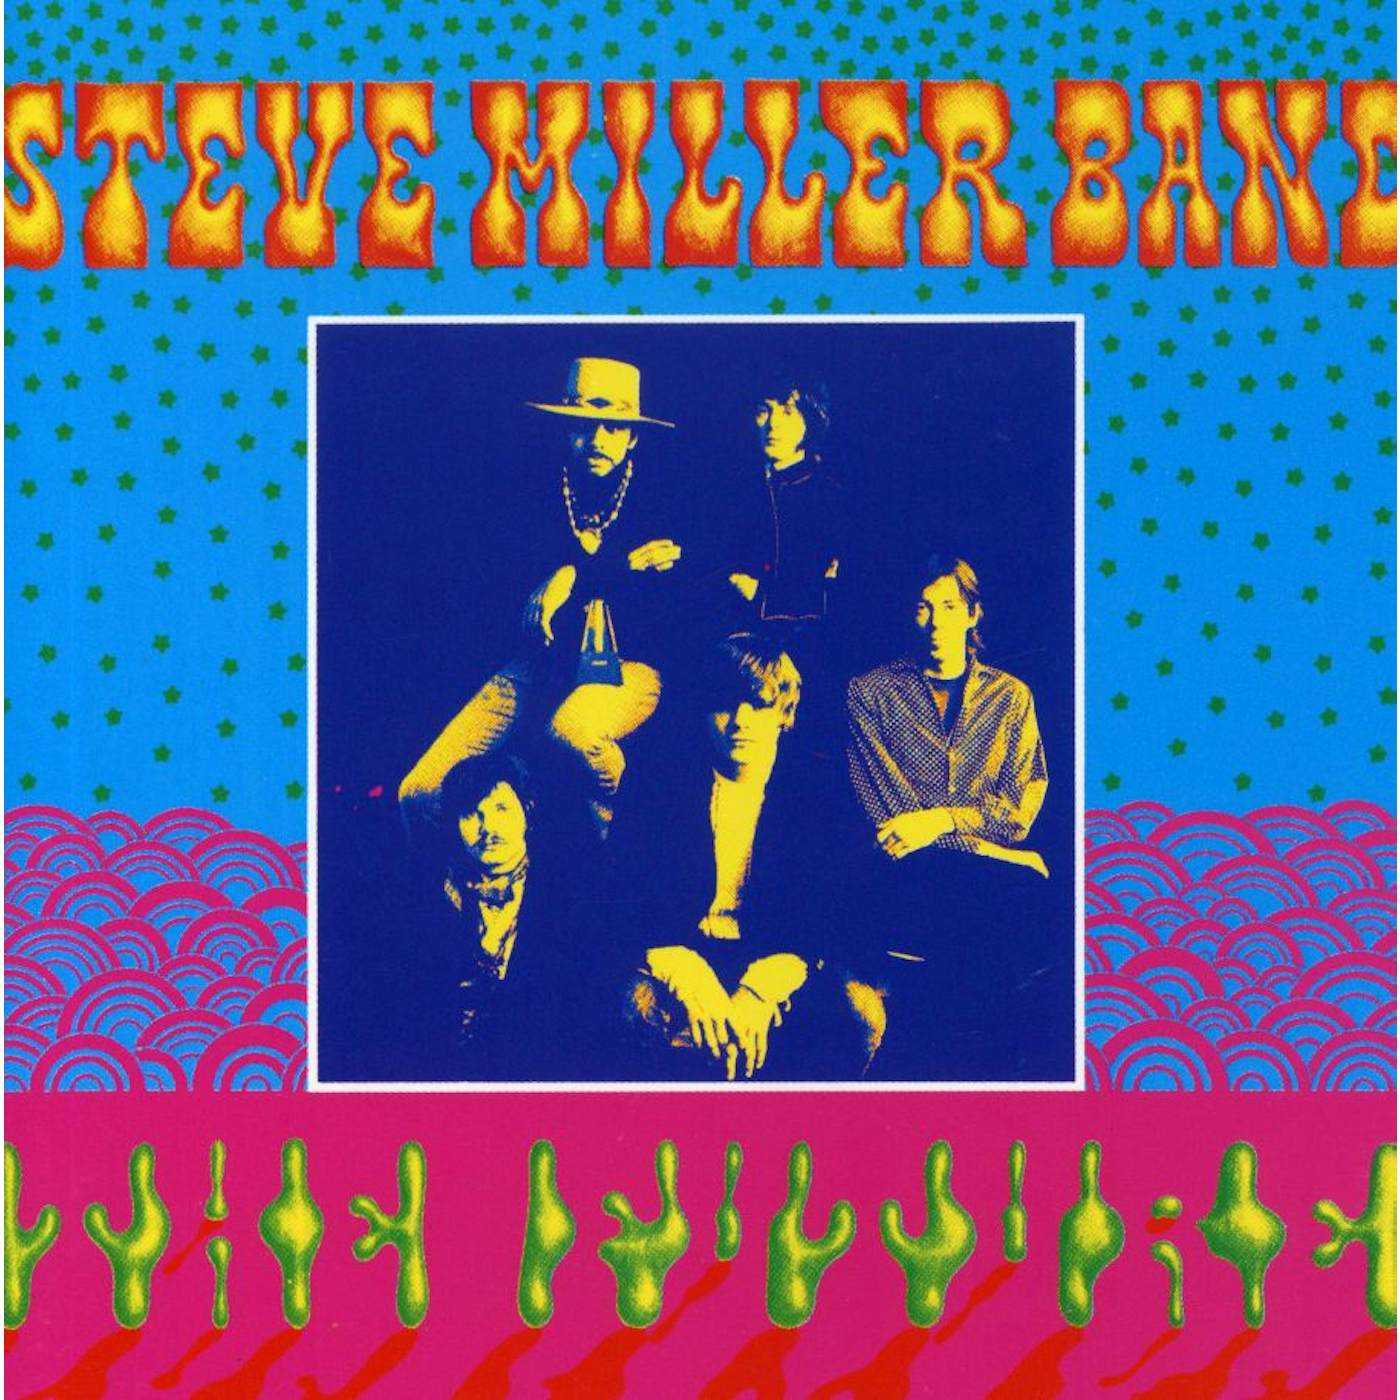 Steve Miller Band CHILDREN OF THE FUTURE CD